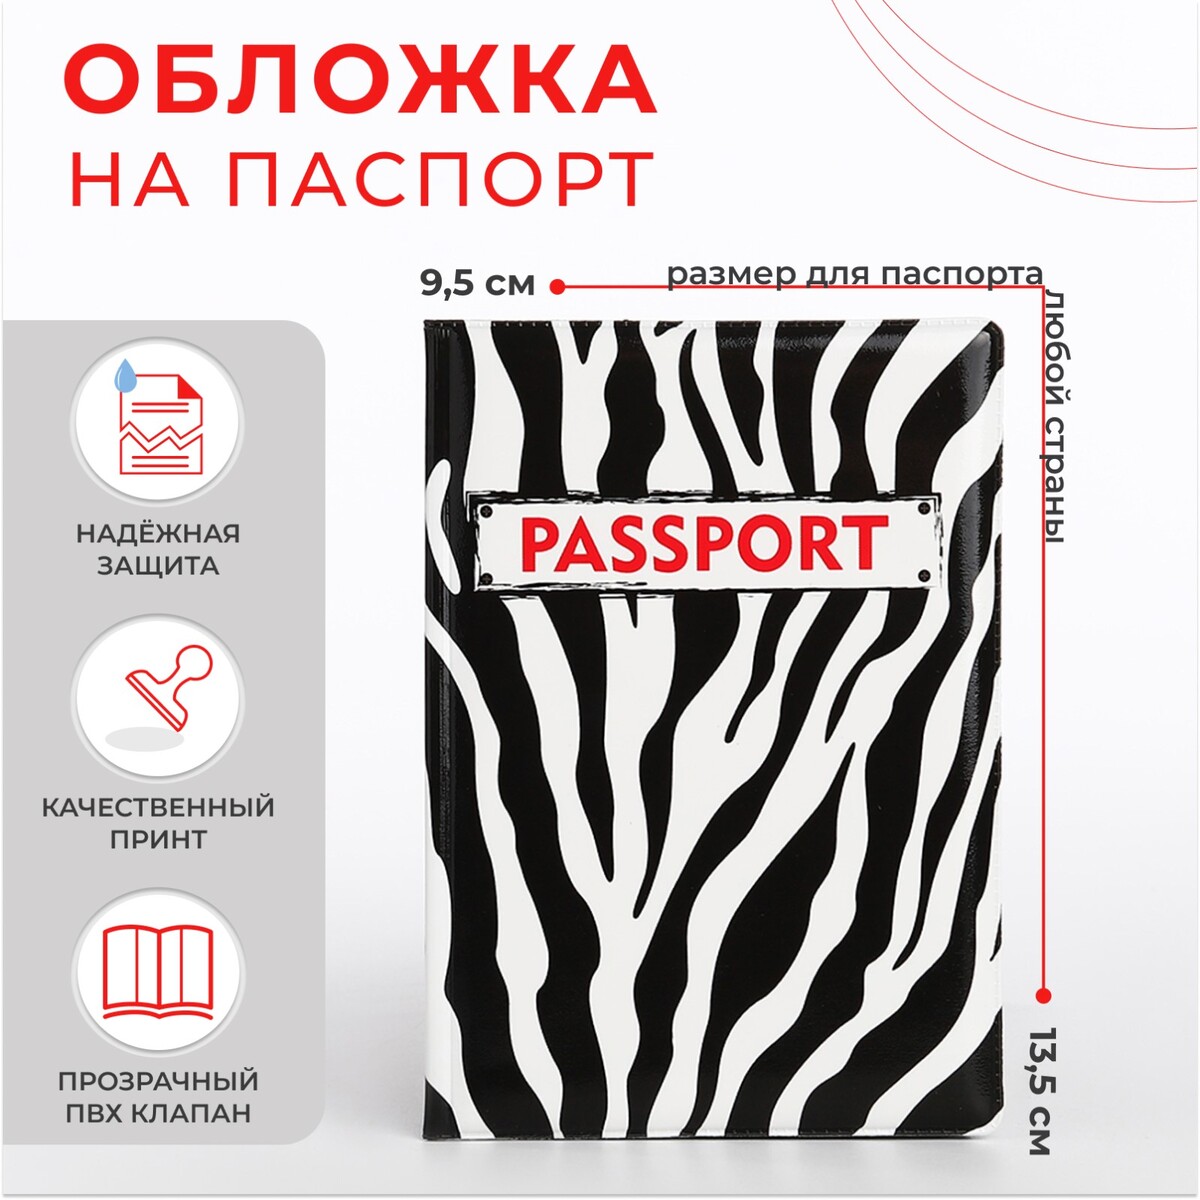 Обложка для паспорта, цвет черный/белый обложка для паспорта